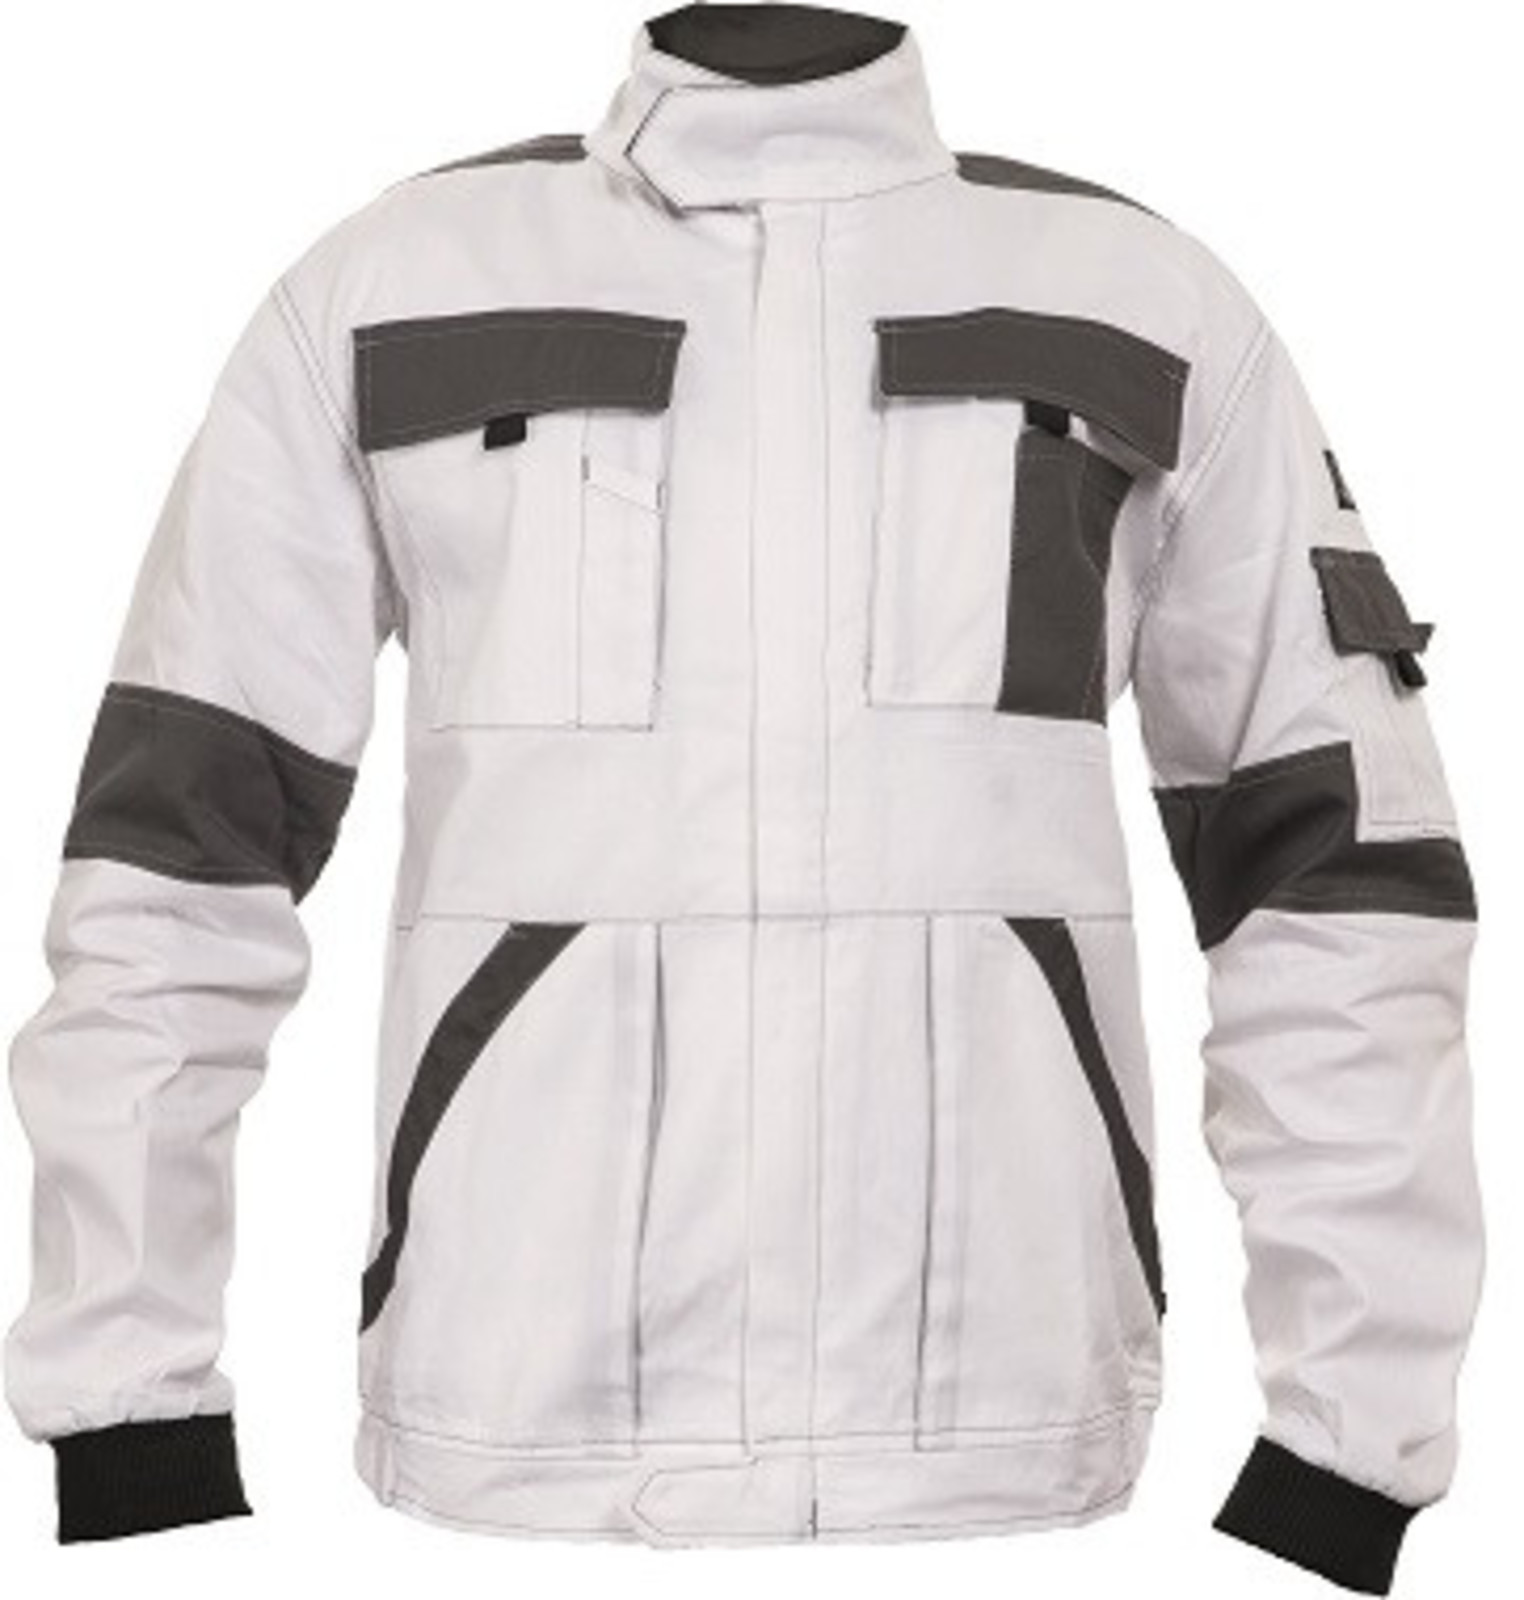 Tenšia bavlnená montérková bunda Max Summer  - veľkosť: 60, farba: biela/sivá